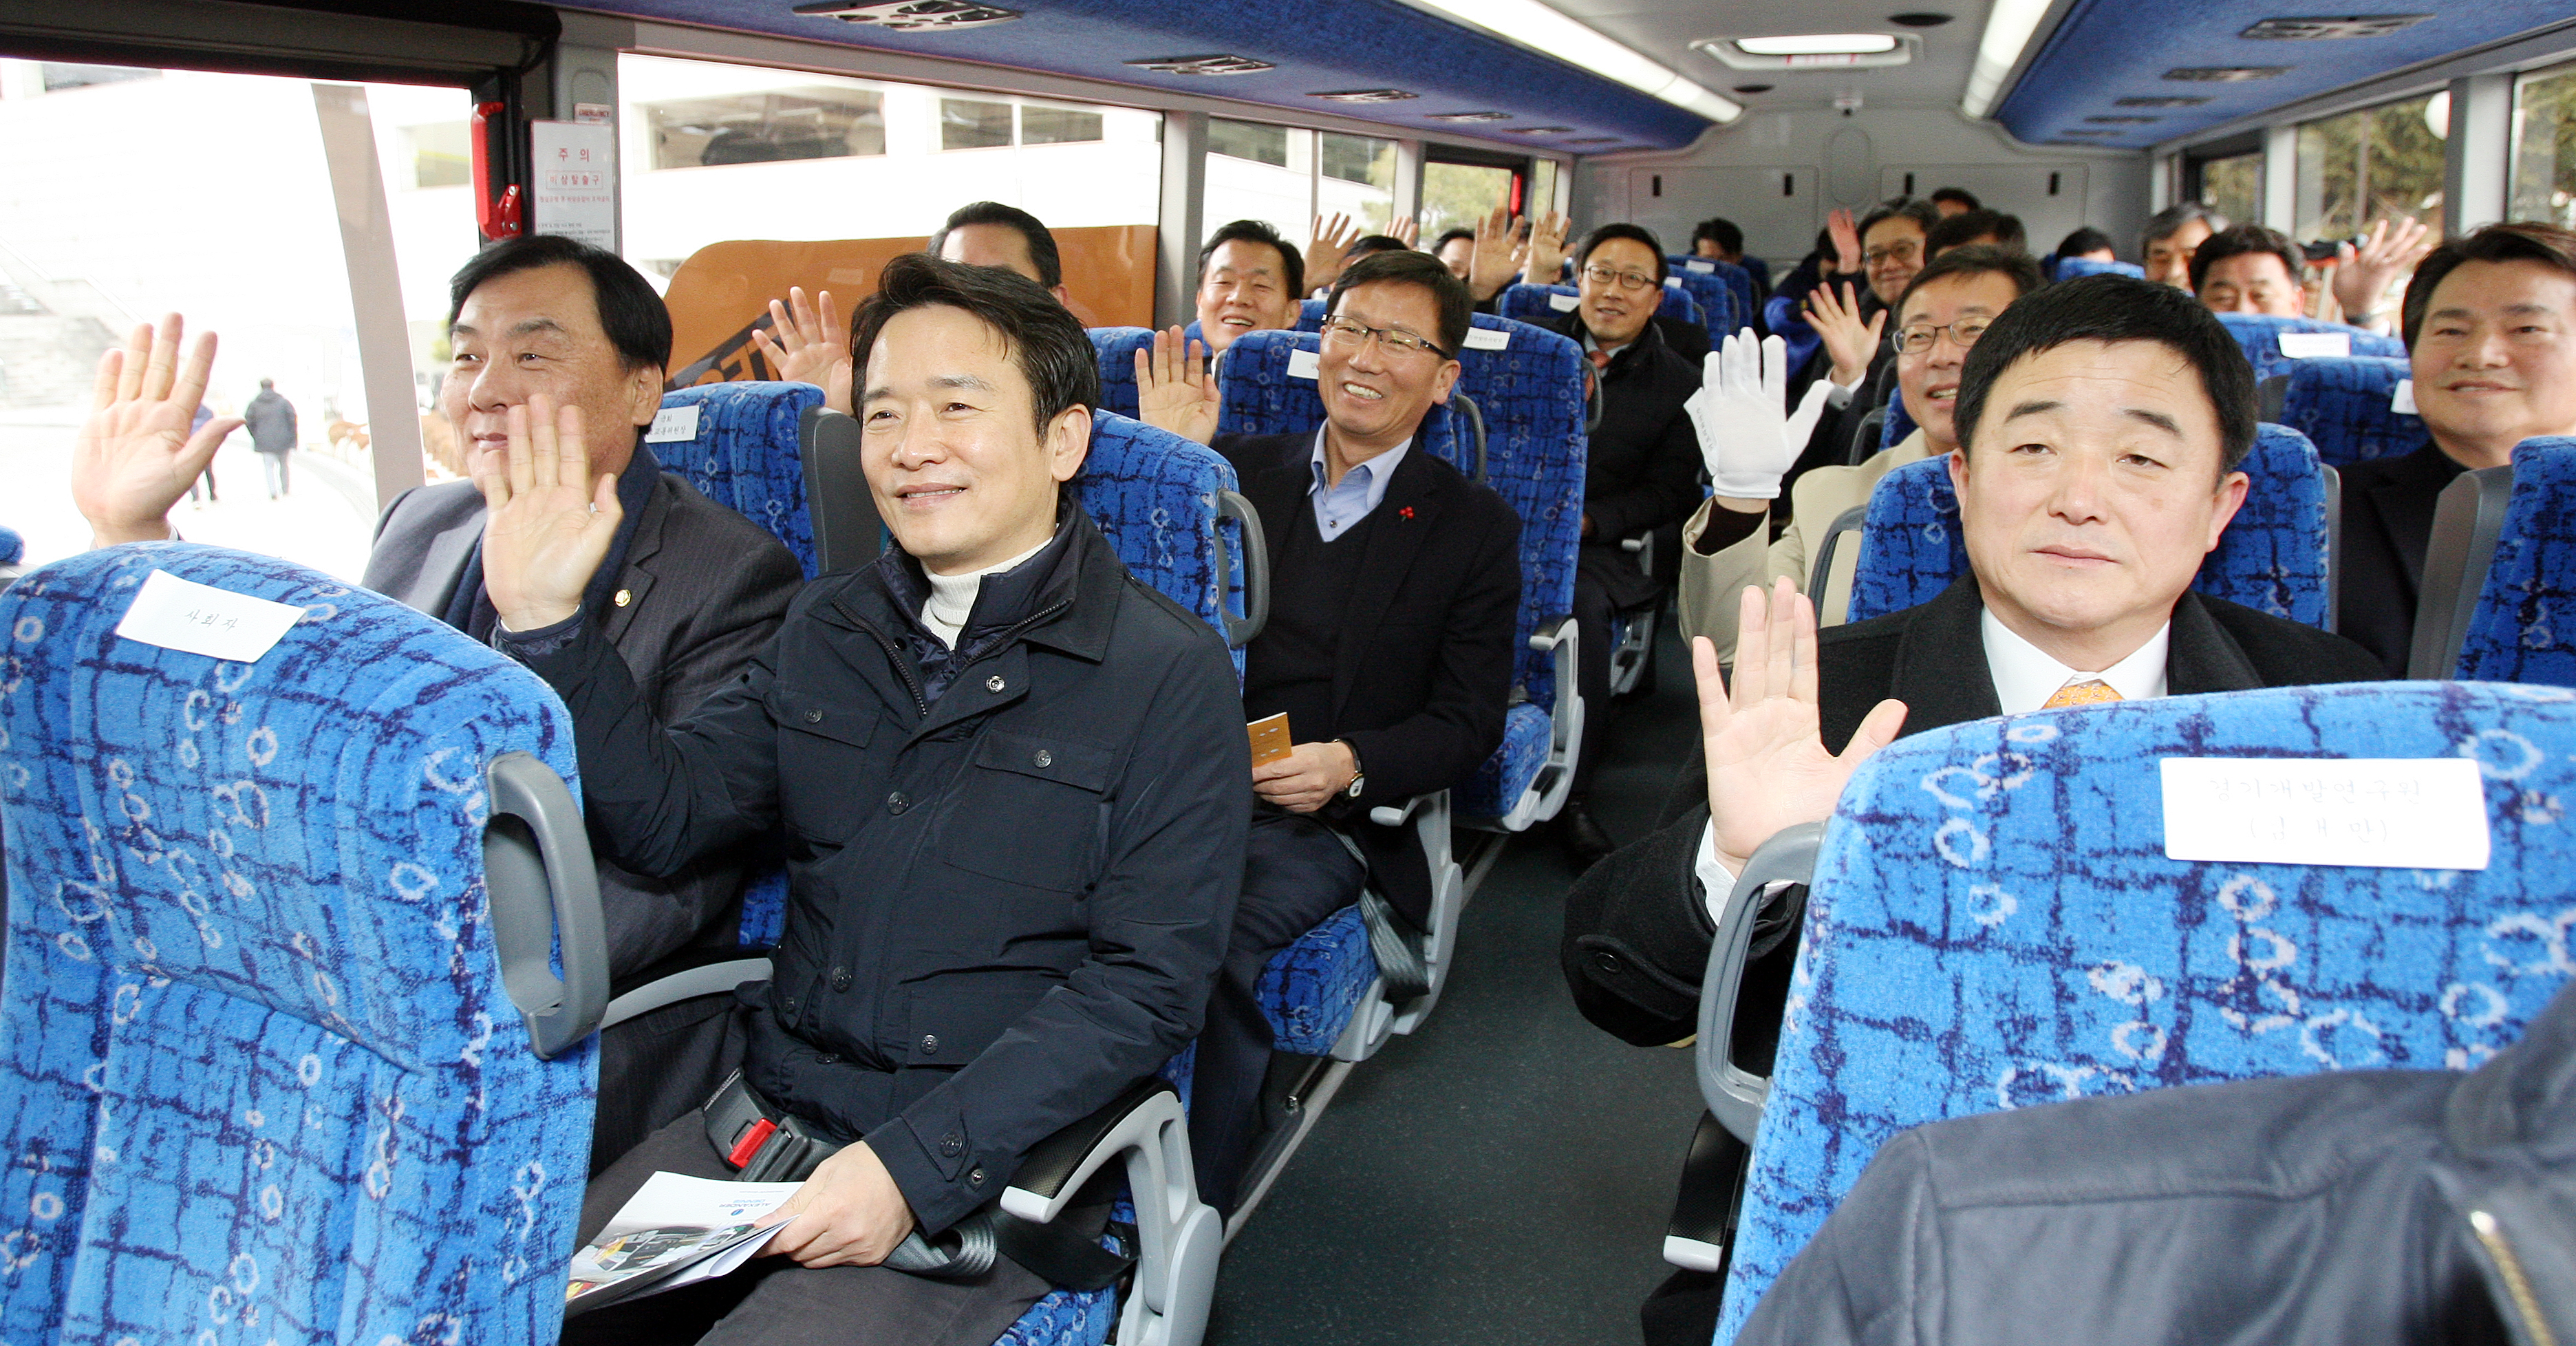 2층버스에 탑승한 남경필 지사가 버스가 출발하기 전에 손을 흔들고 있다.